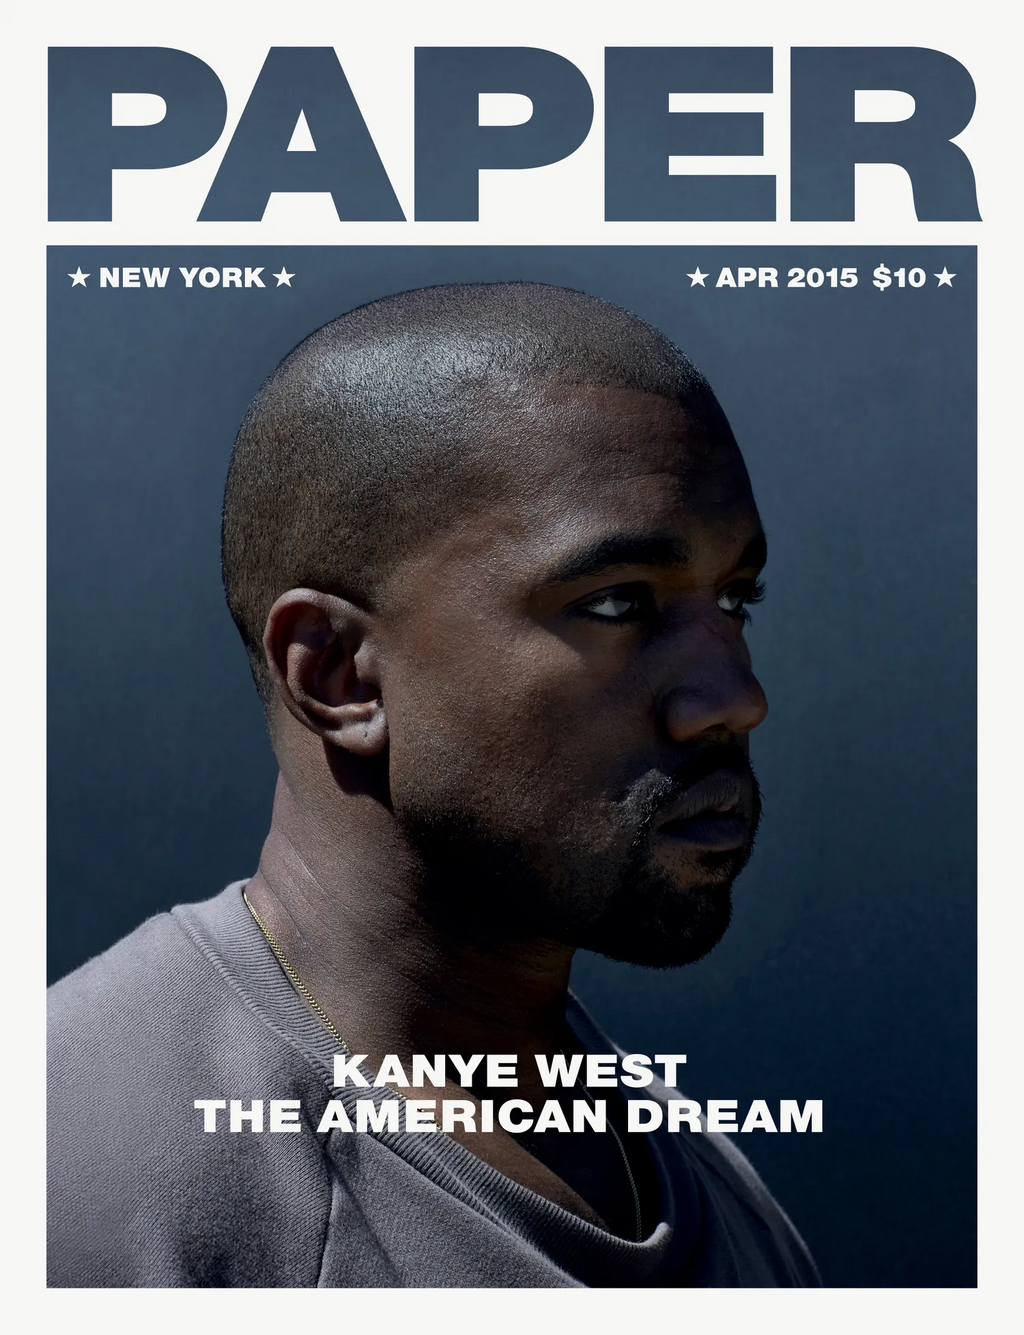 קניה ווסט על שער מגזין "פייפר", אפריל 2015